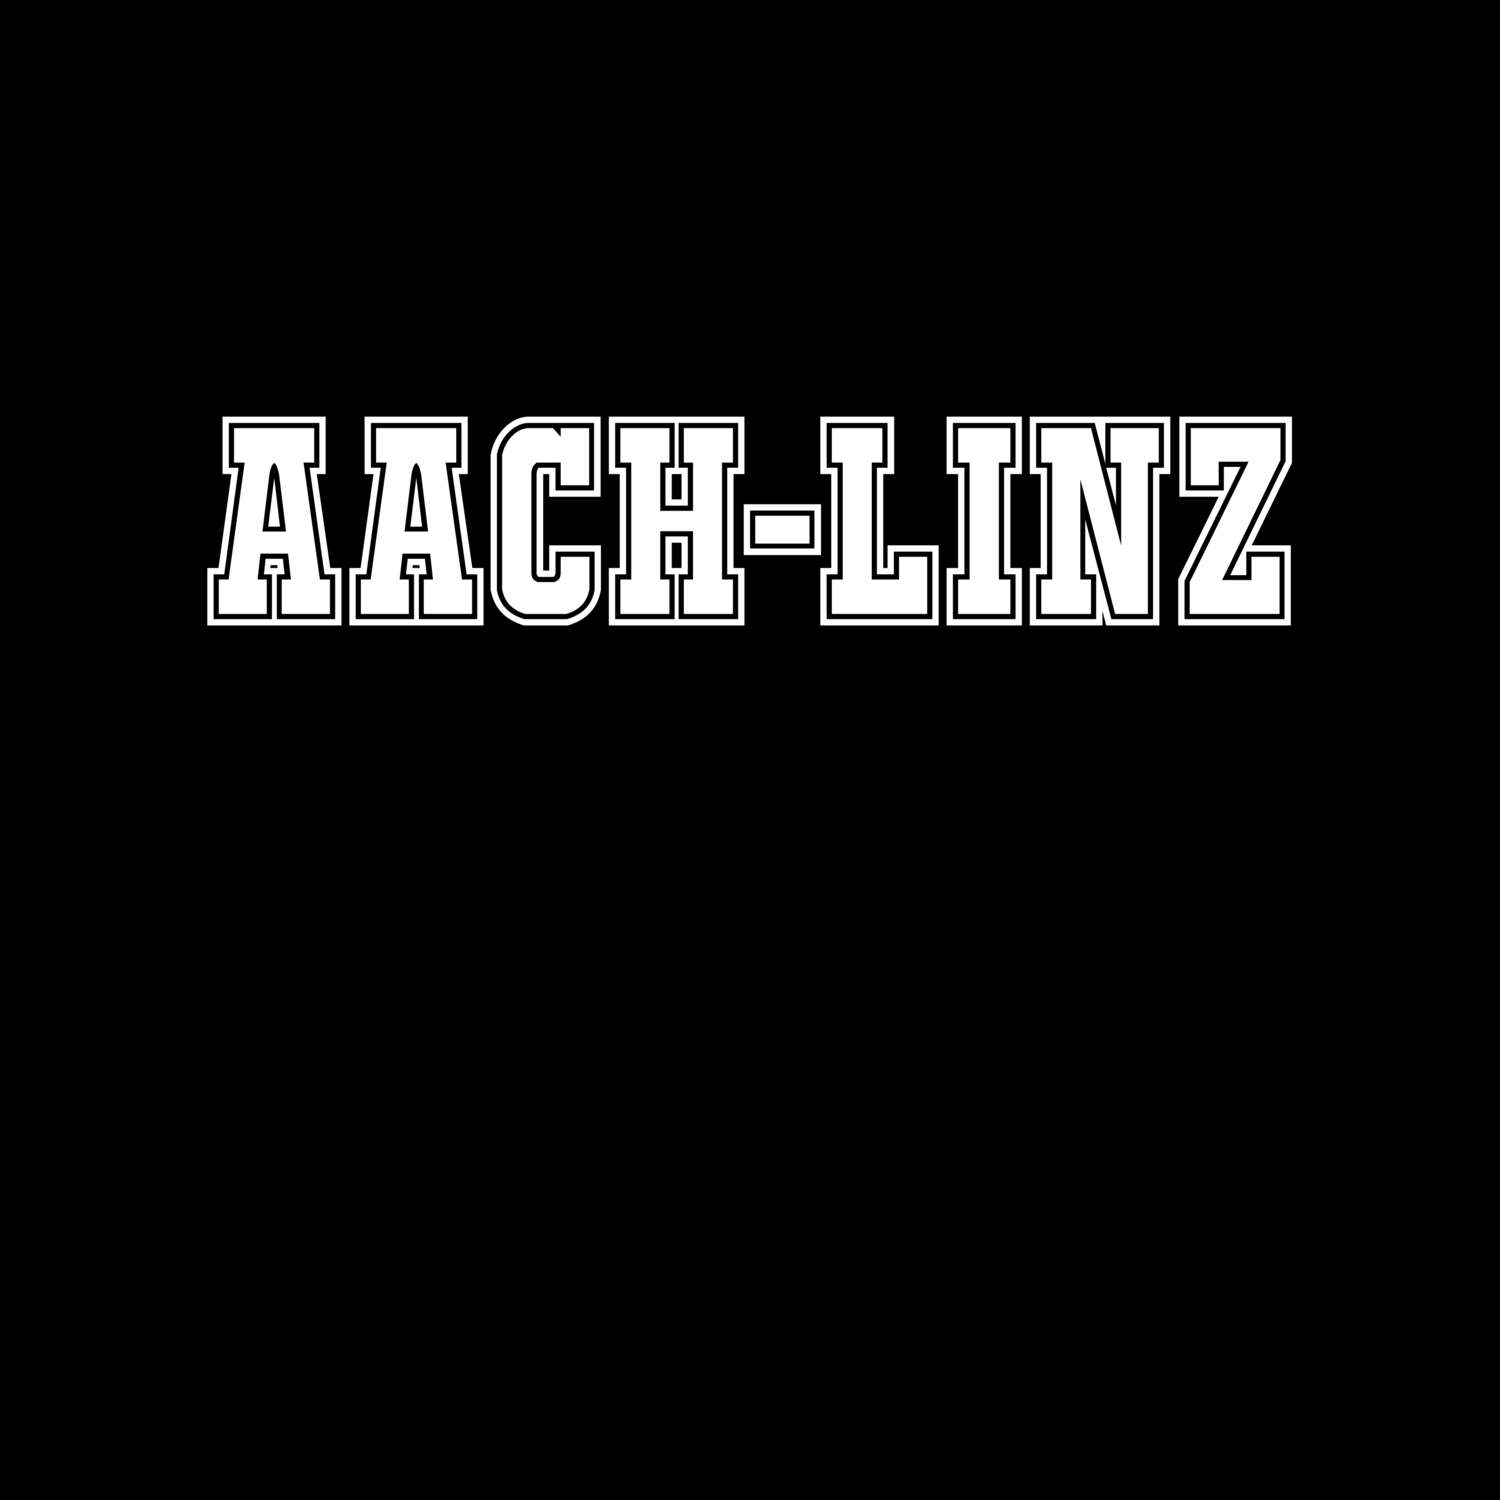 Aach-Linz T-Shirt »Classic«